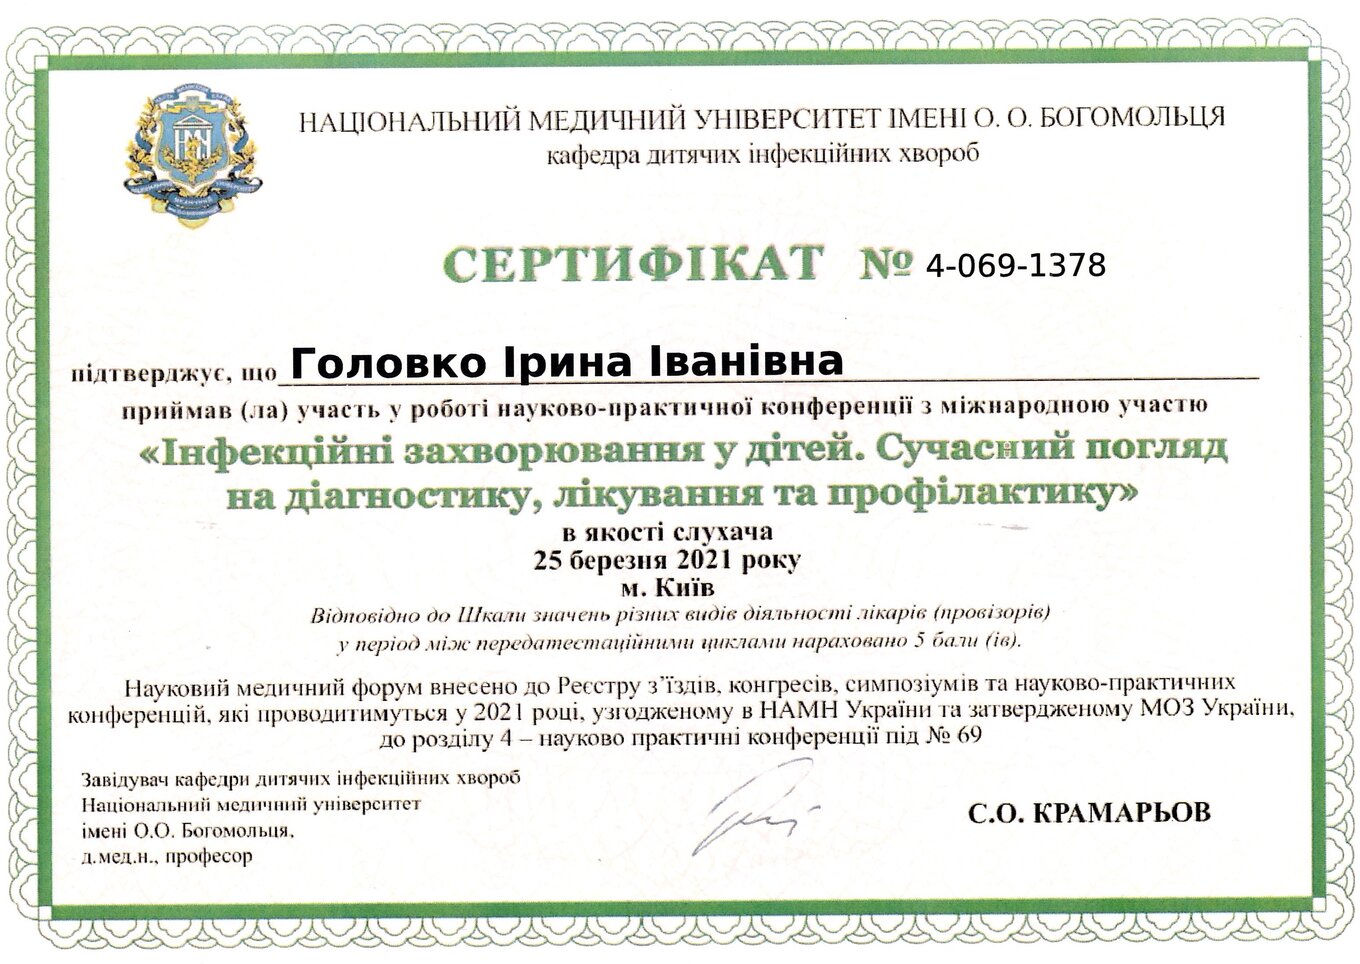 Golovko Irina Ivanivna sertifikat19